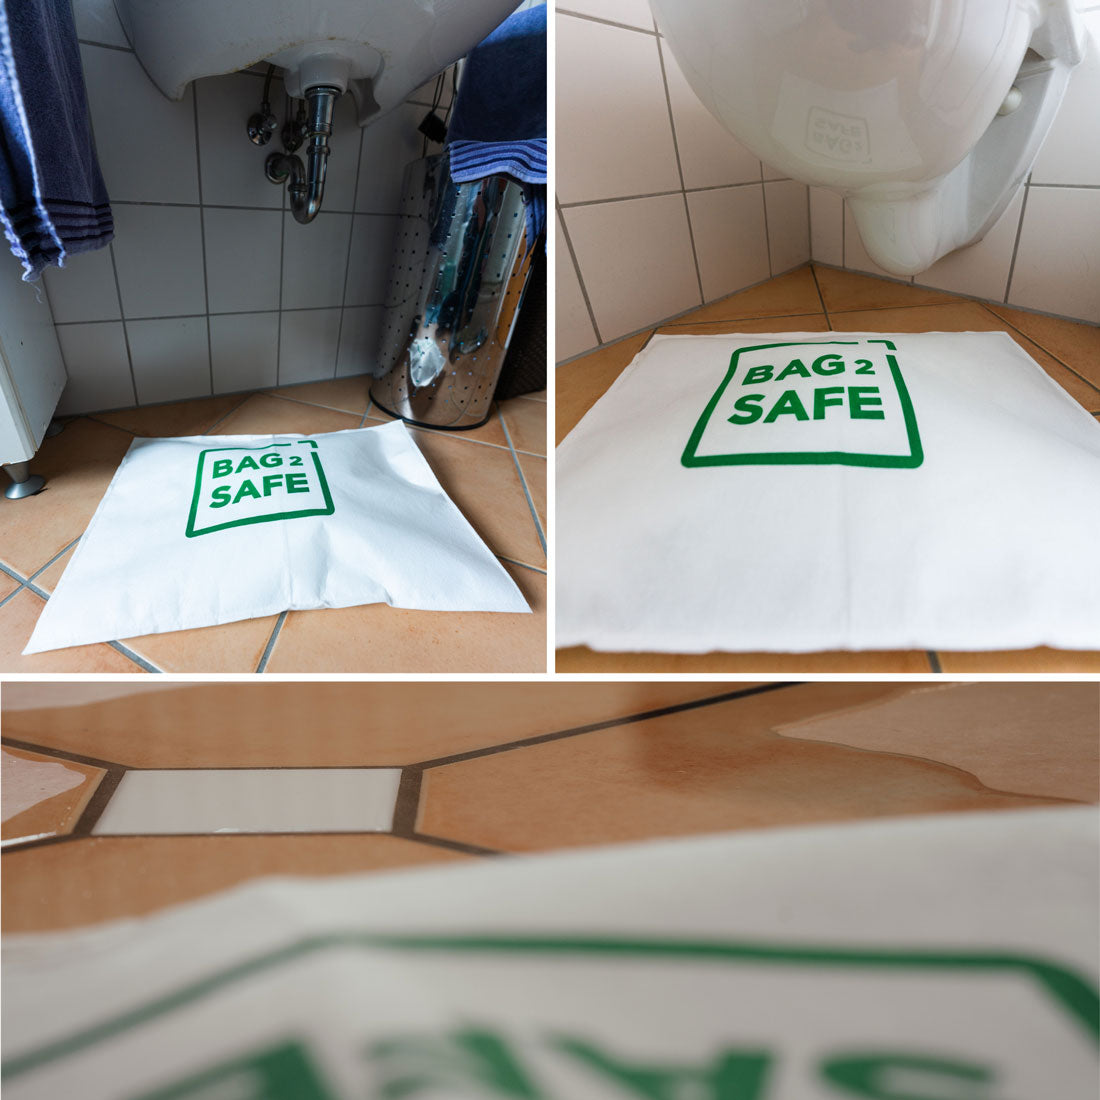 BAG 2 SAFE Vliessäcke mit Superabsorber zum Schutz vor Überschwemmungen im Bad